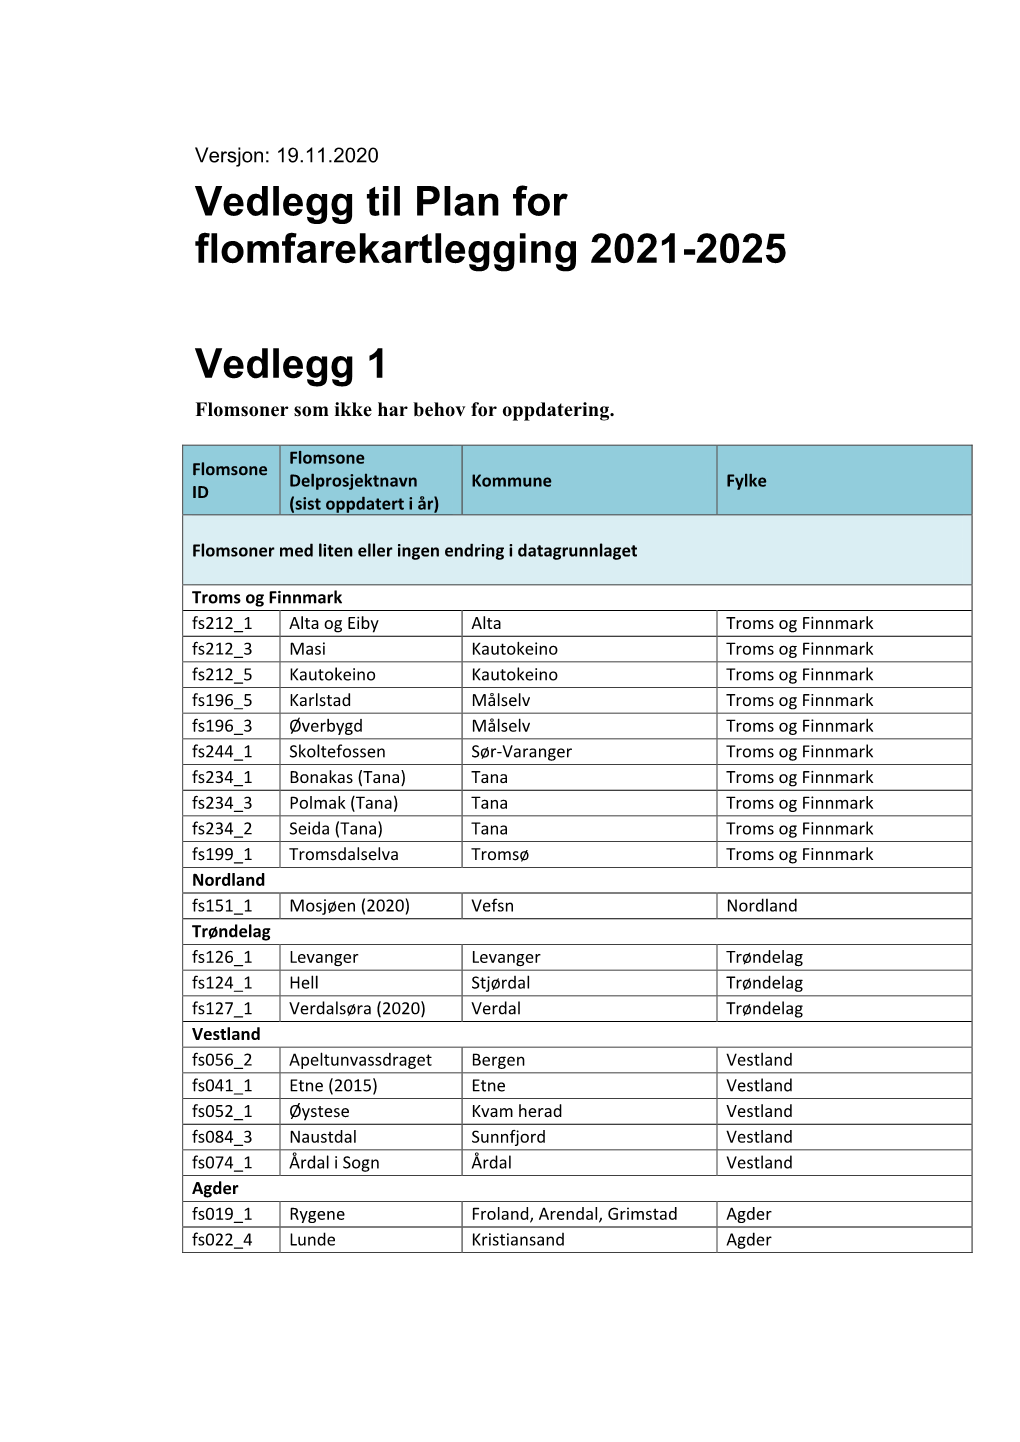 Vedlegg Til Plan for Flomfarekartlegging 2021-2025